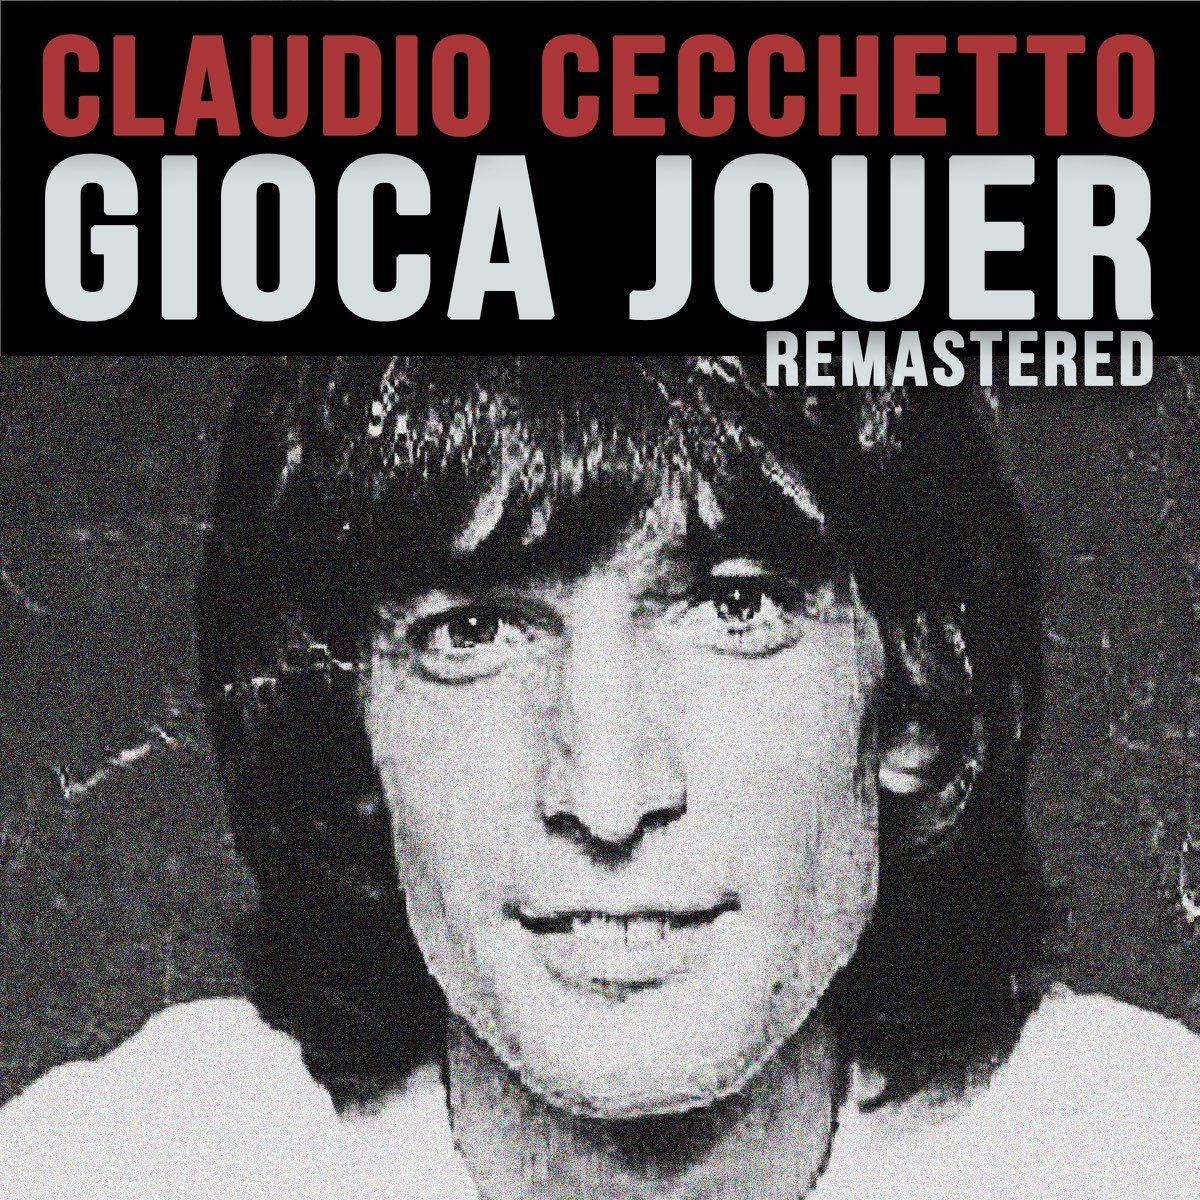 Gioca Jouer - Single - Album di Claudio Cecchetto - Apple Music